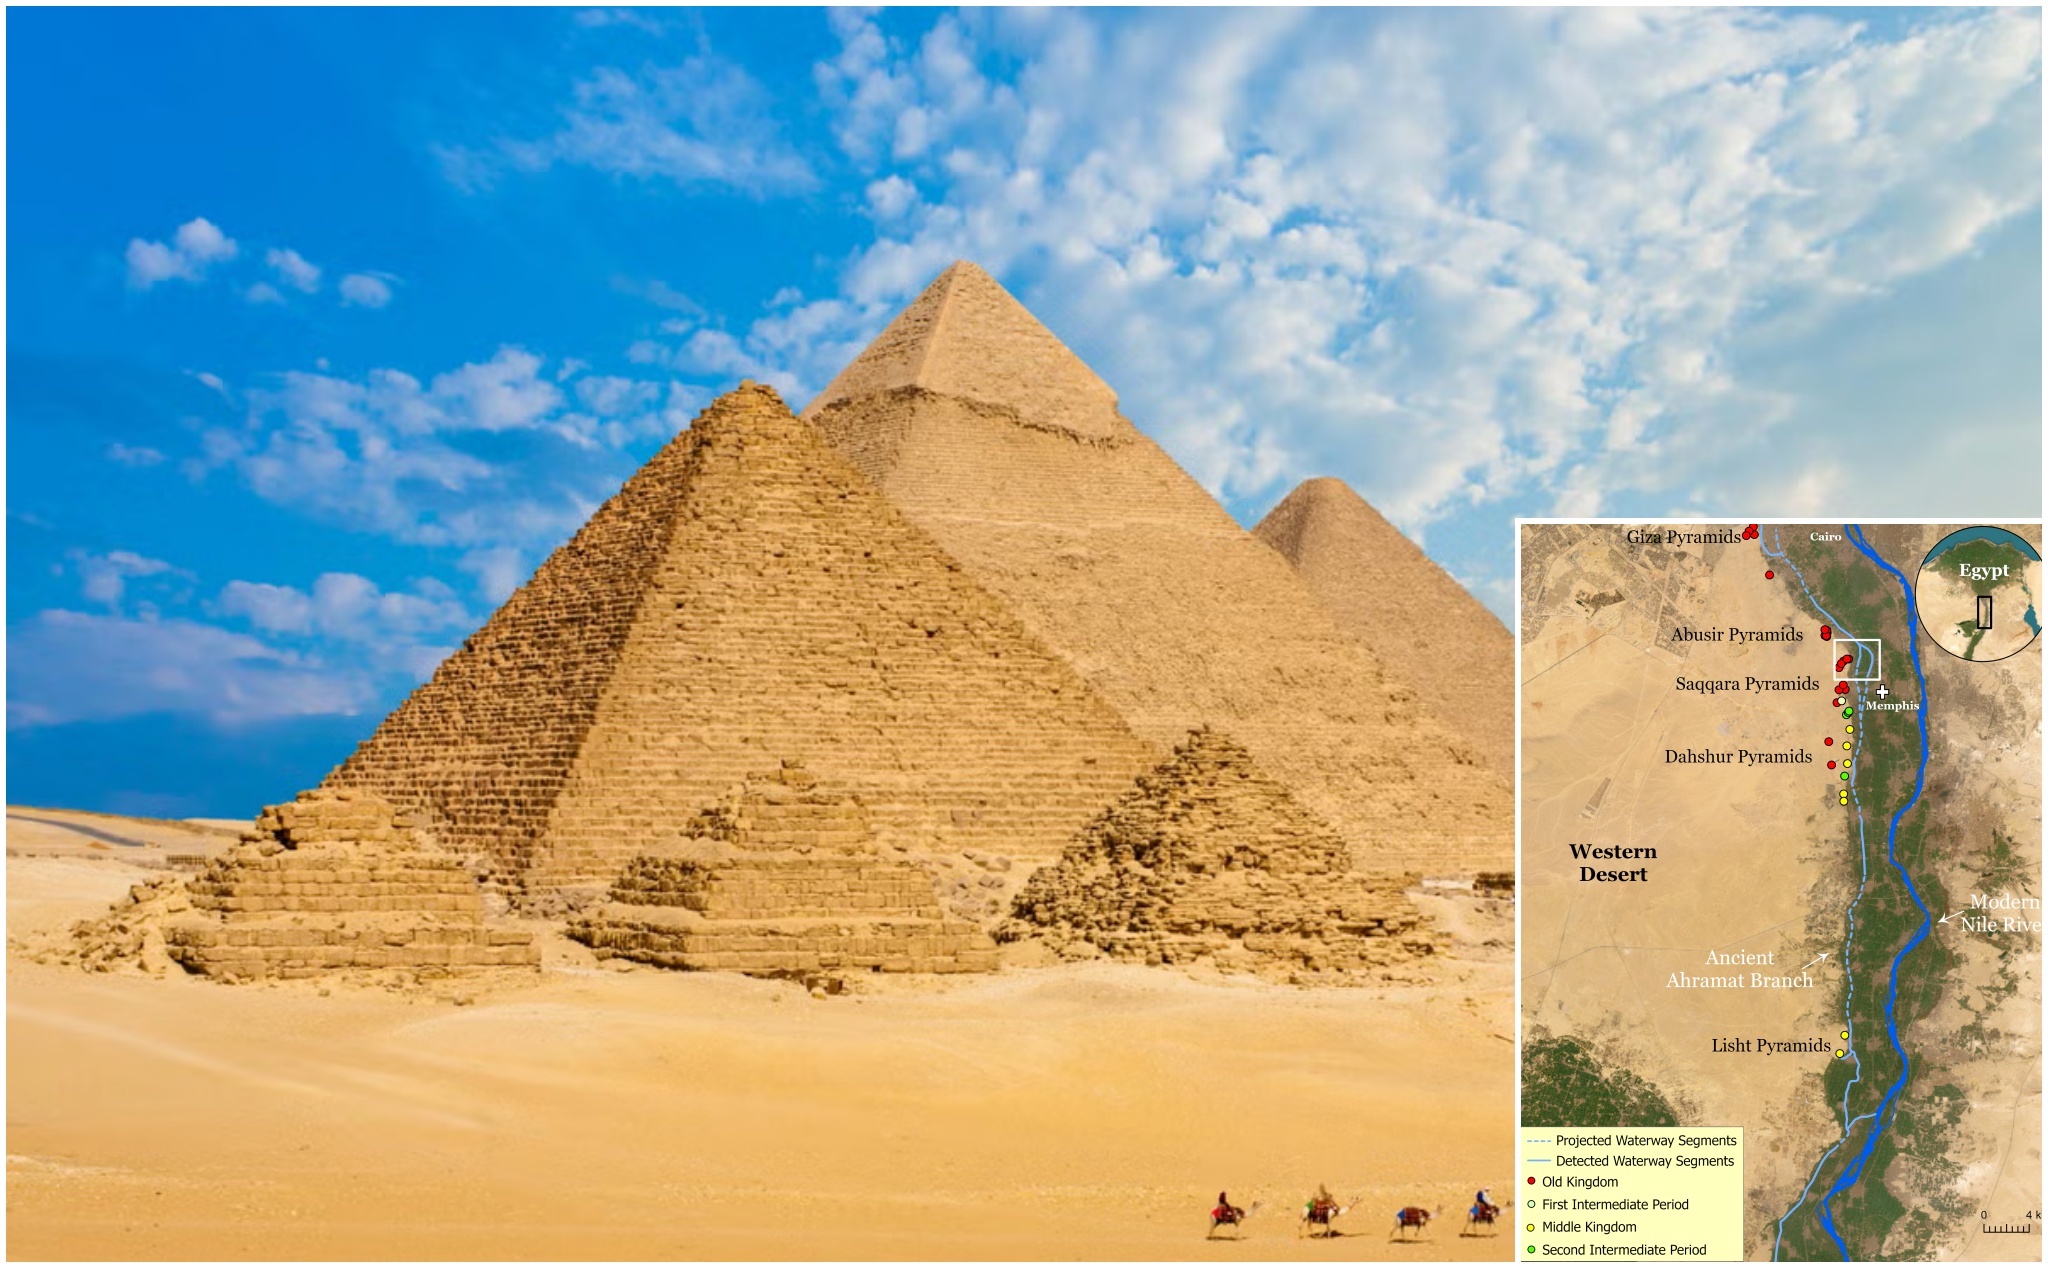 Phát hiện nhánh sông Nile bị vùi lấp - chìa khoá giải mã bí ẩn cách xây dựng Kim Tự Tháp Ai Cập